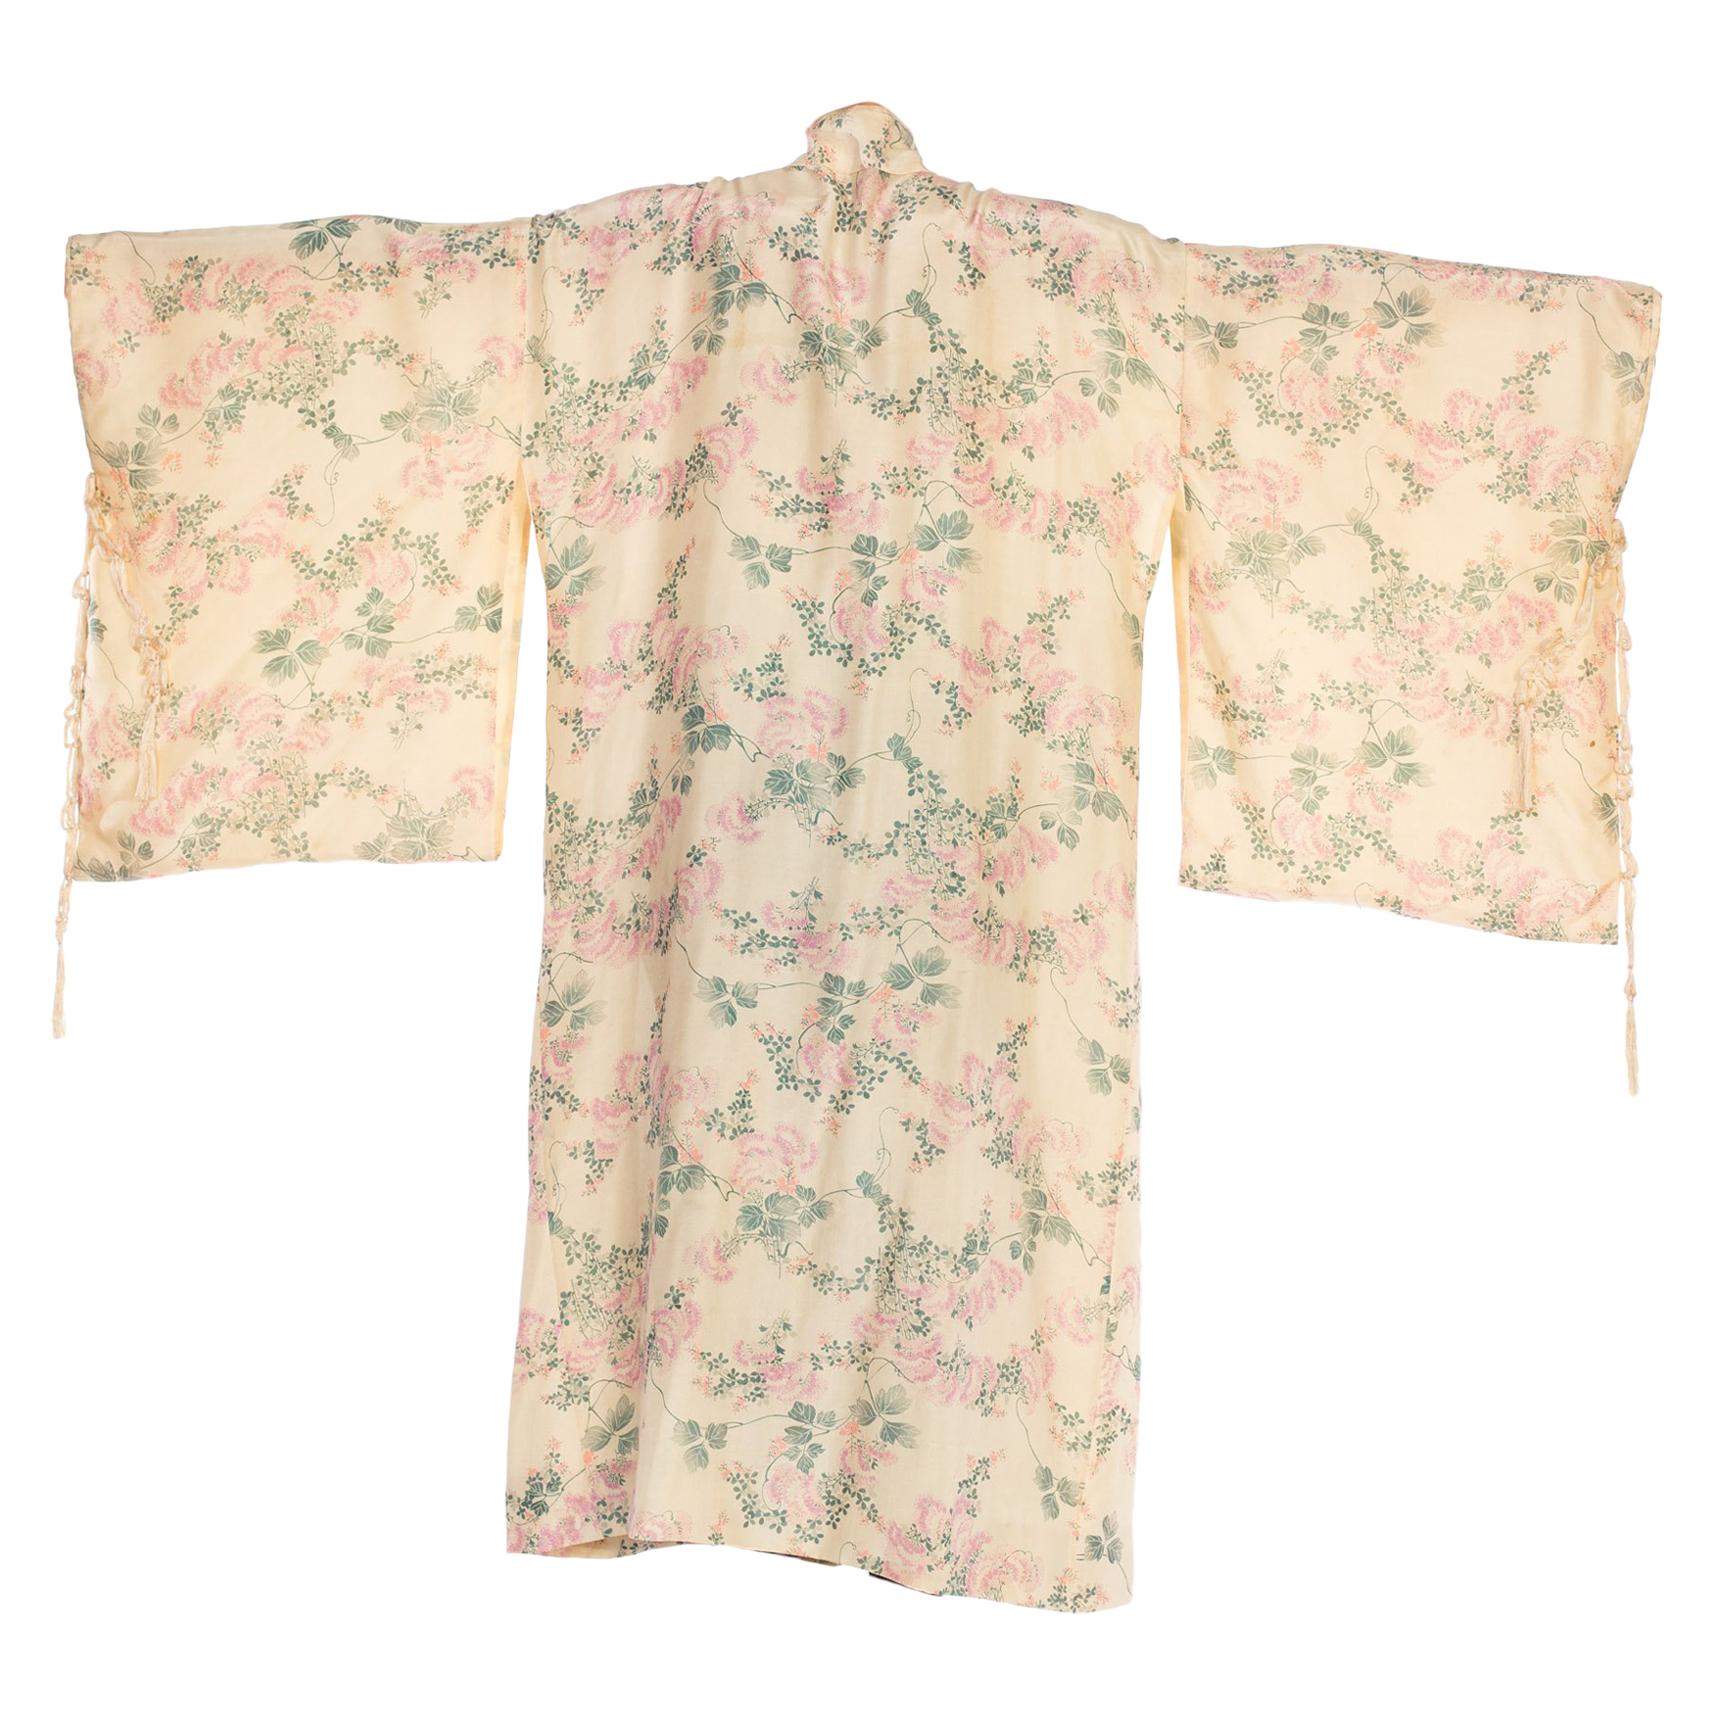 Seltene viktorianische handbedruckte, leichte, leichte Seide, 1890er Jahre  Kimono